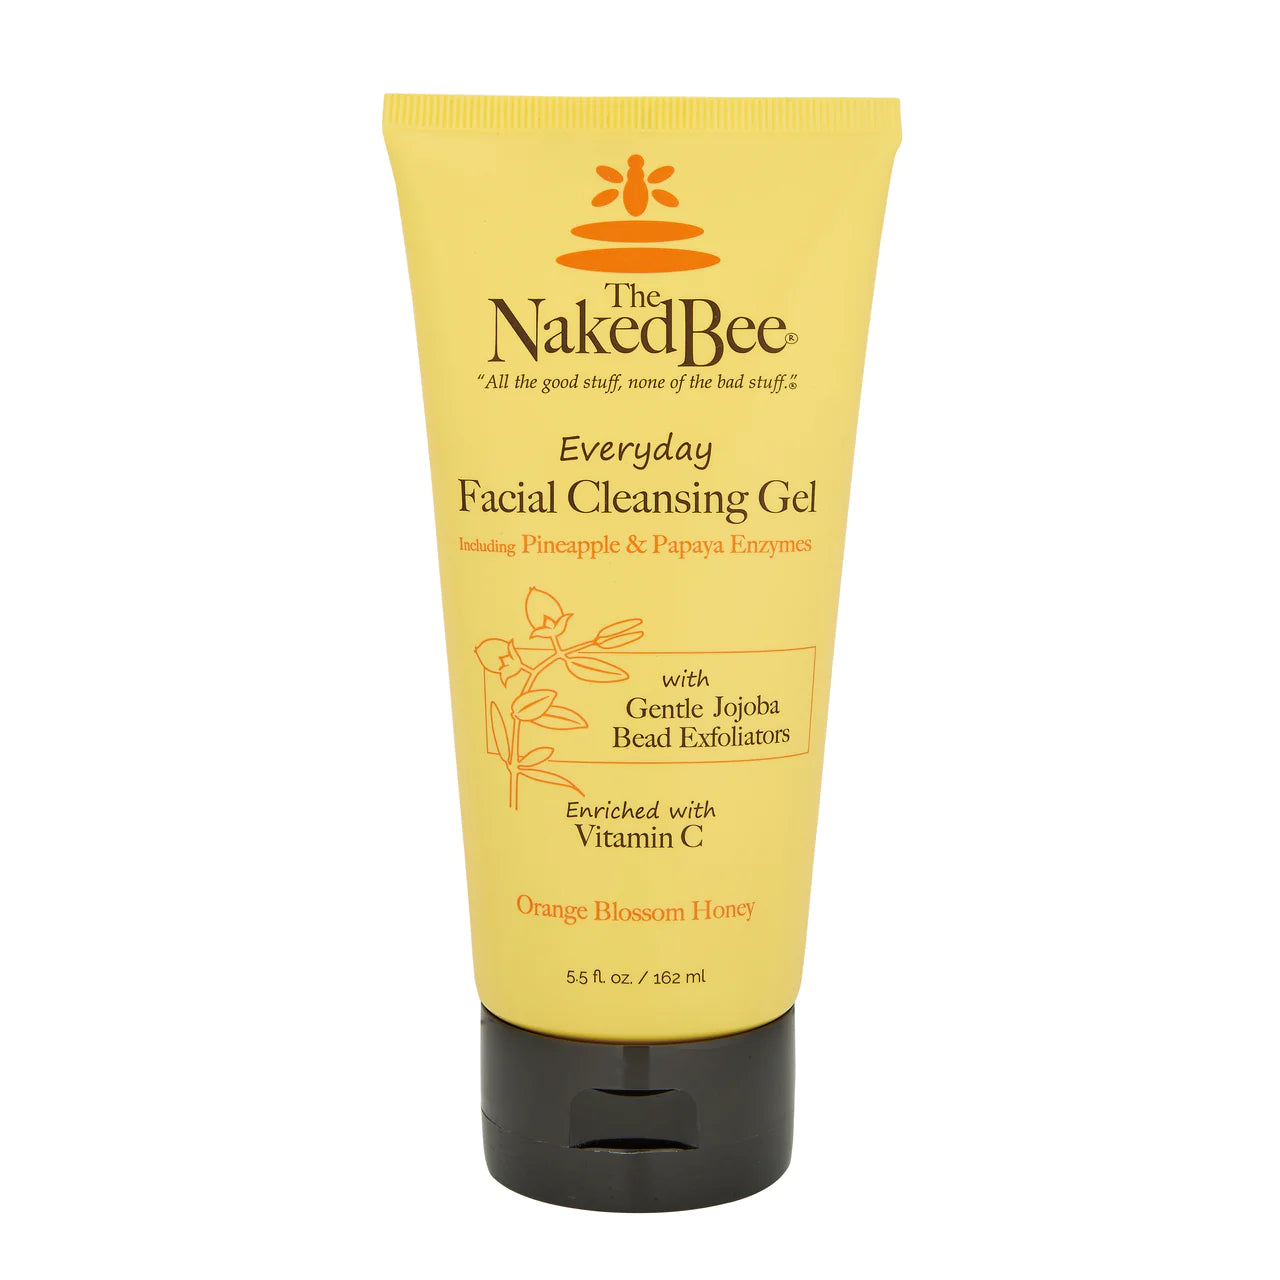 Naked Bee Facial Cleansing Gel